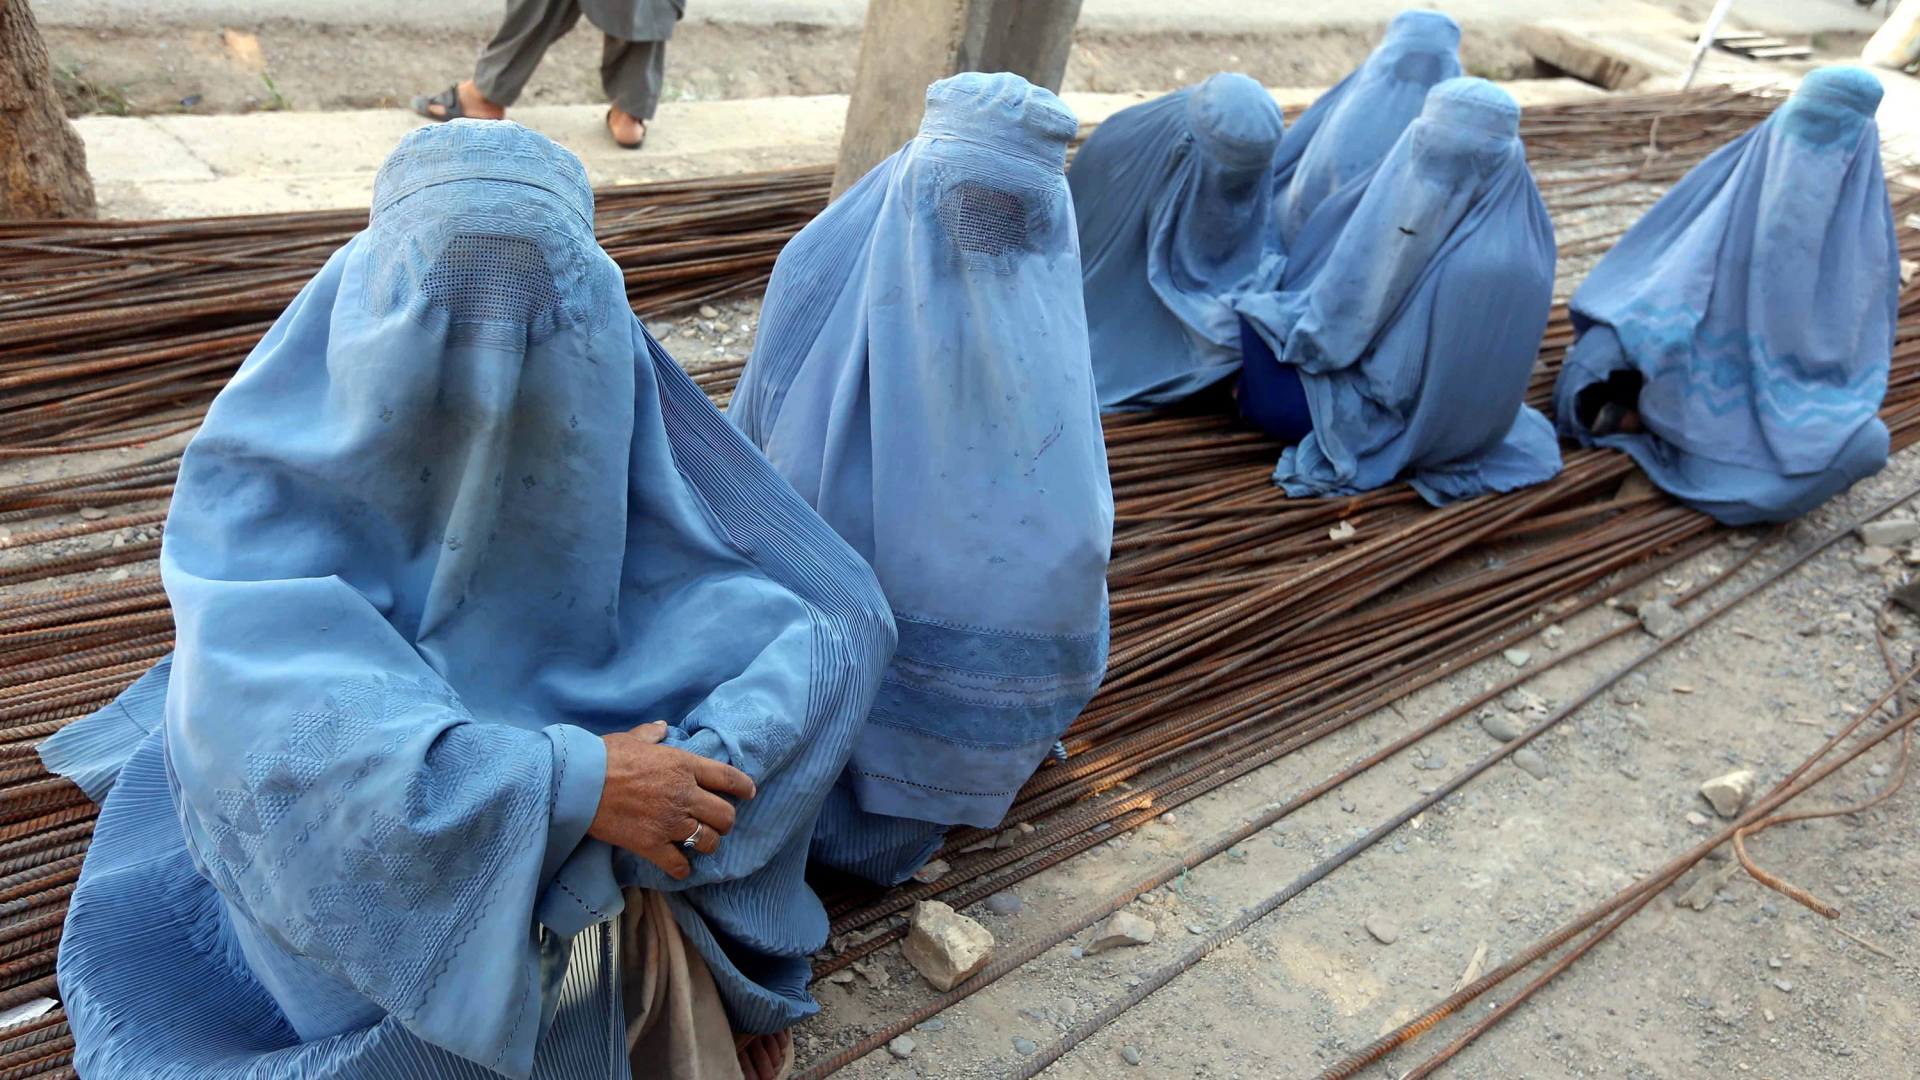 Afghanische Frauen tragen eine Burka und warten auf eine Essensration während des muslimischen Fastenmonats Ramadan in Herat, Afghanistan. | dpa